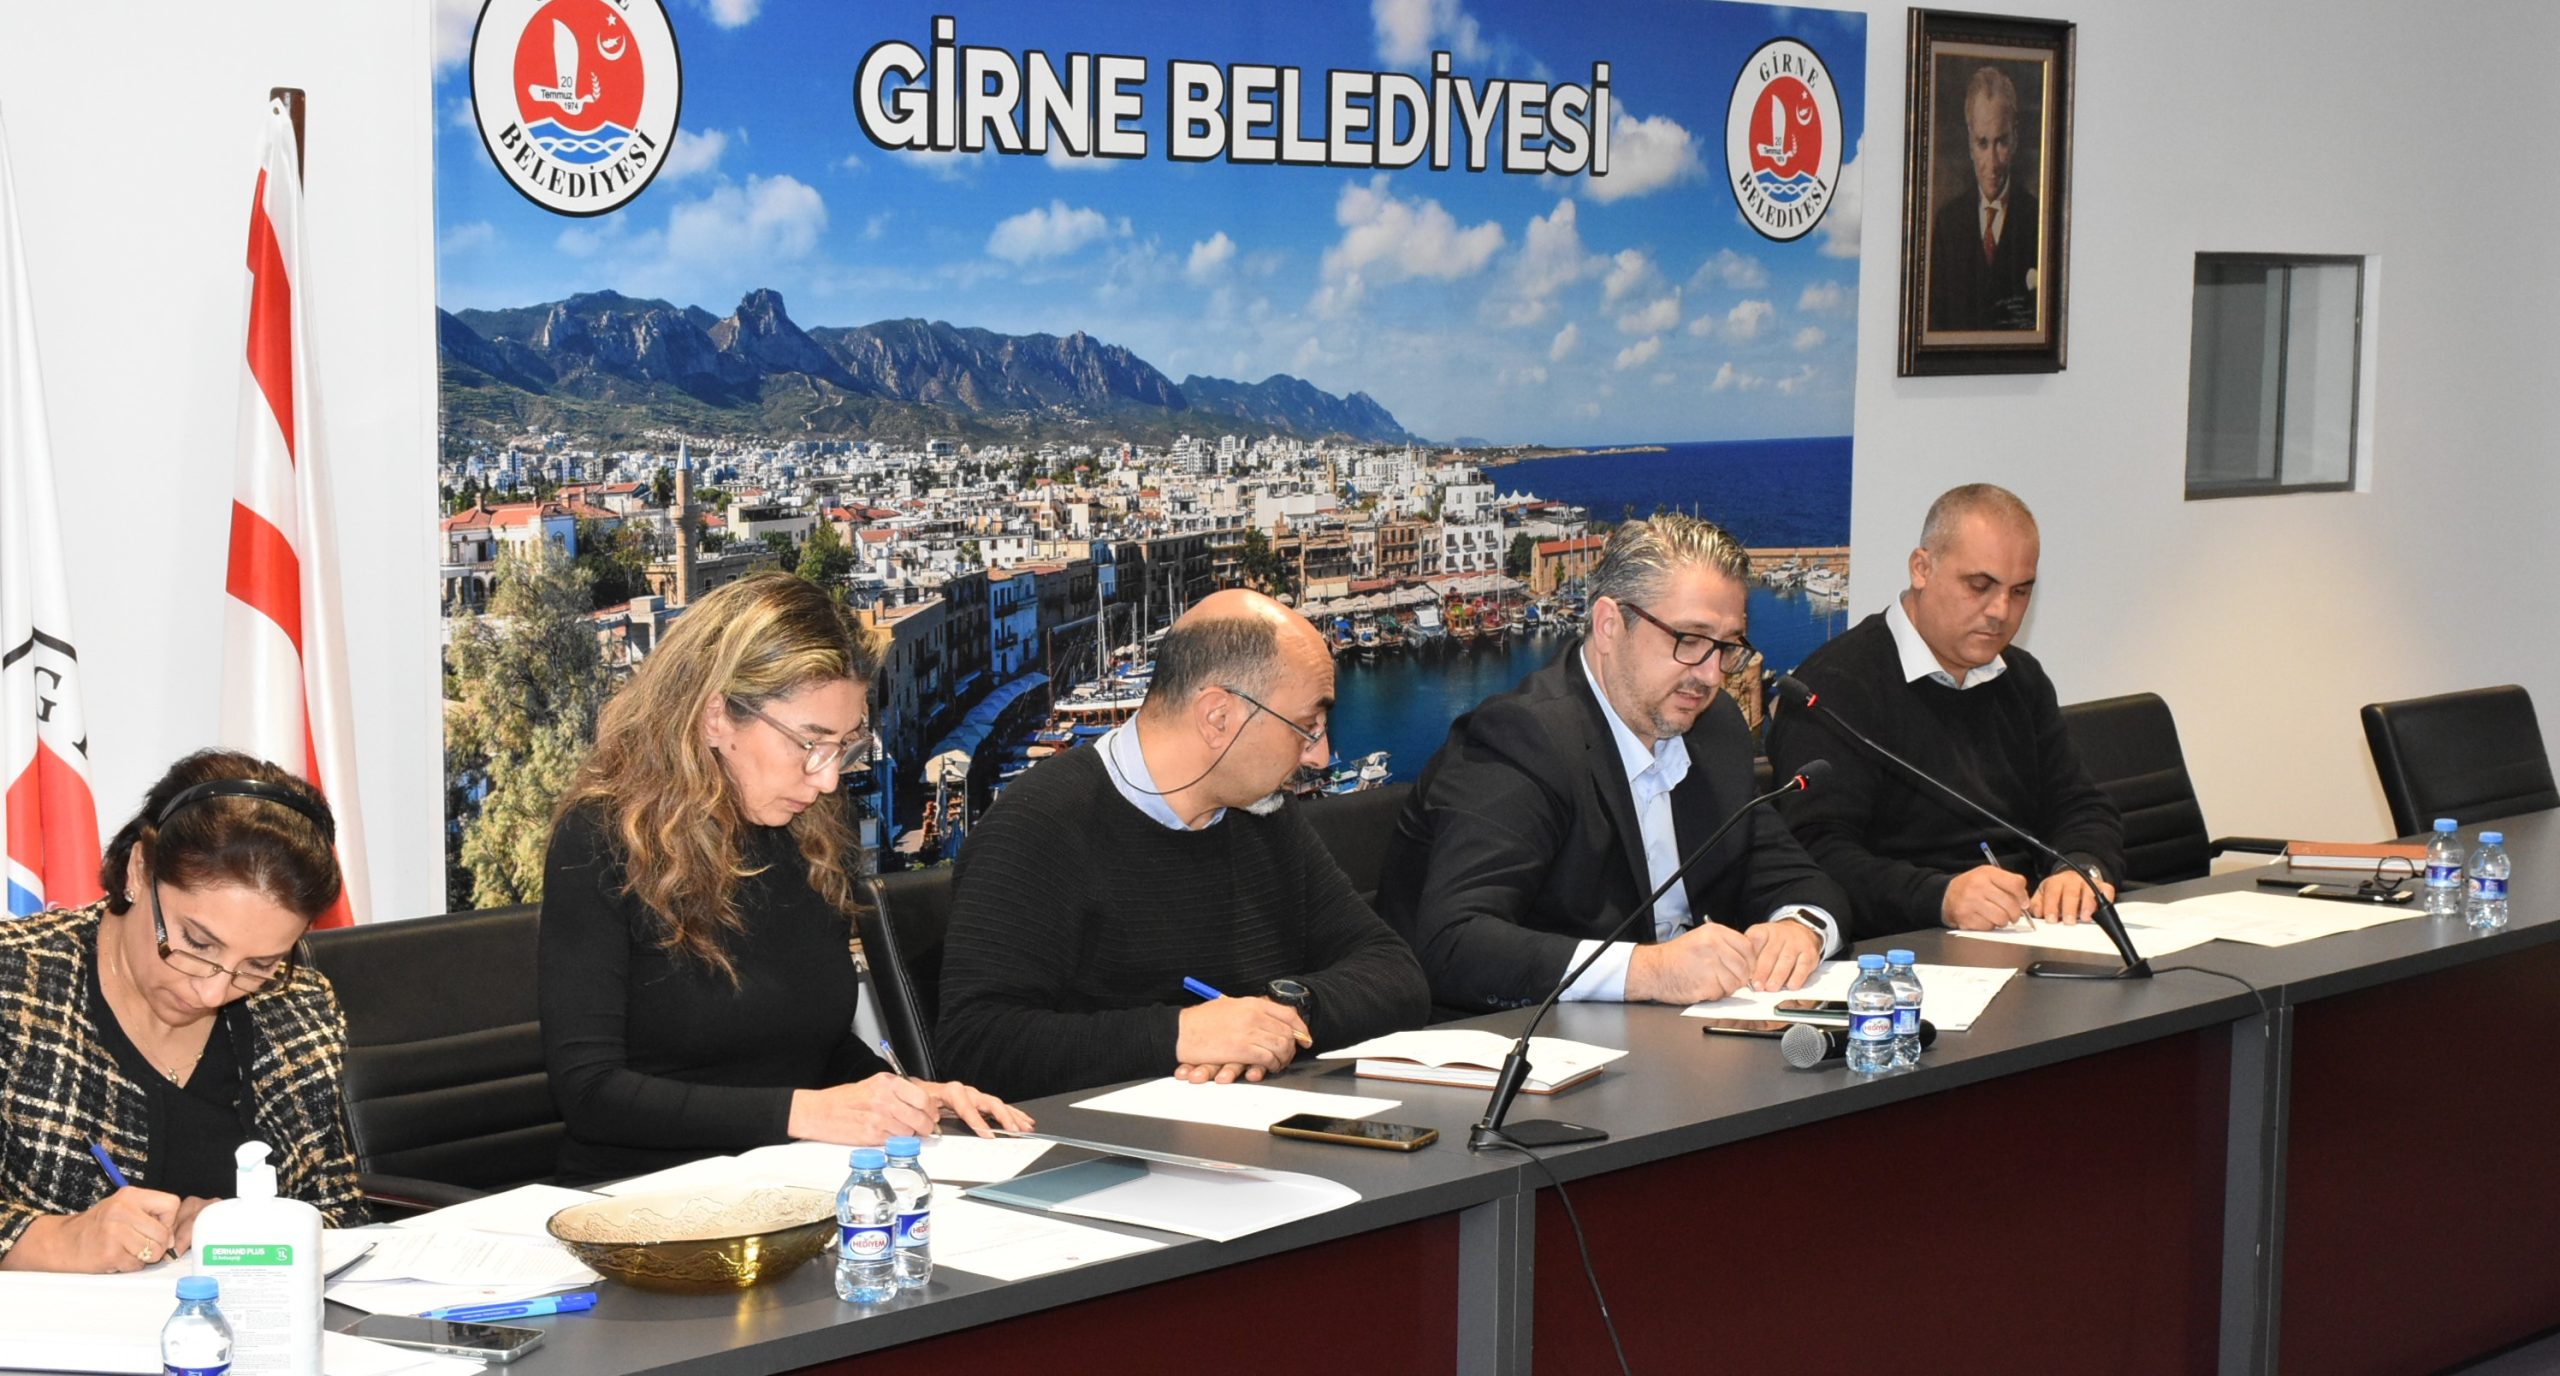 Girne Belediyesi Meclis Toplantısı canlı yayınlandı